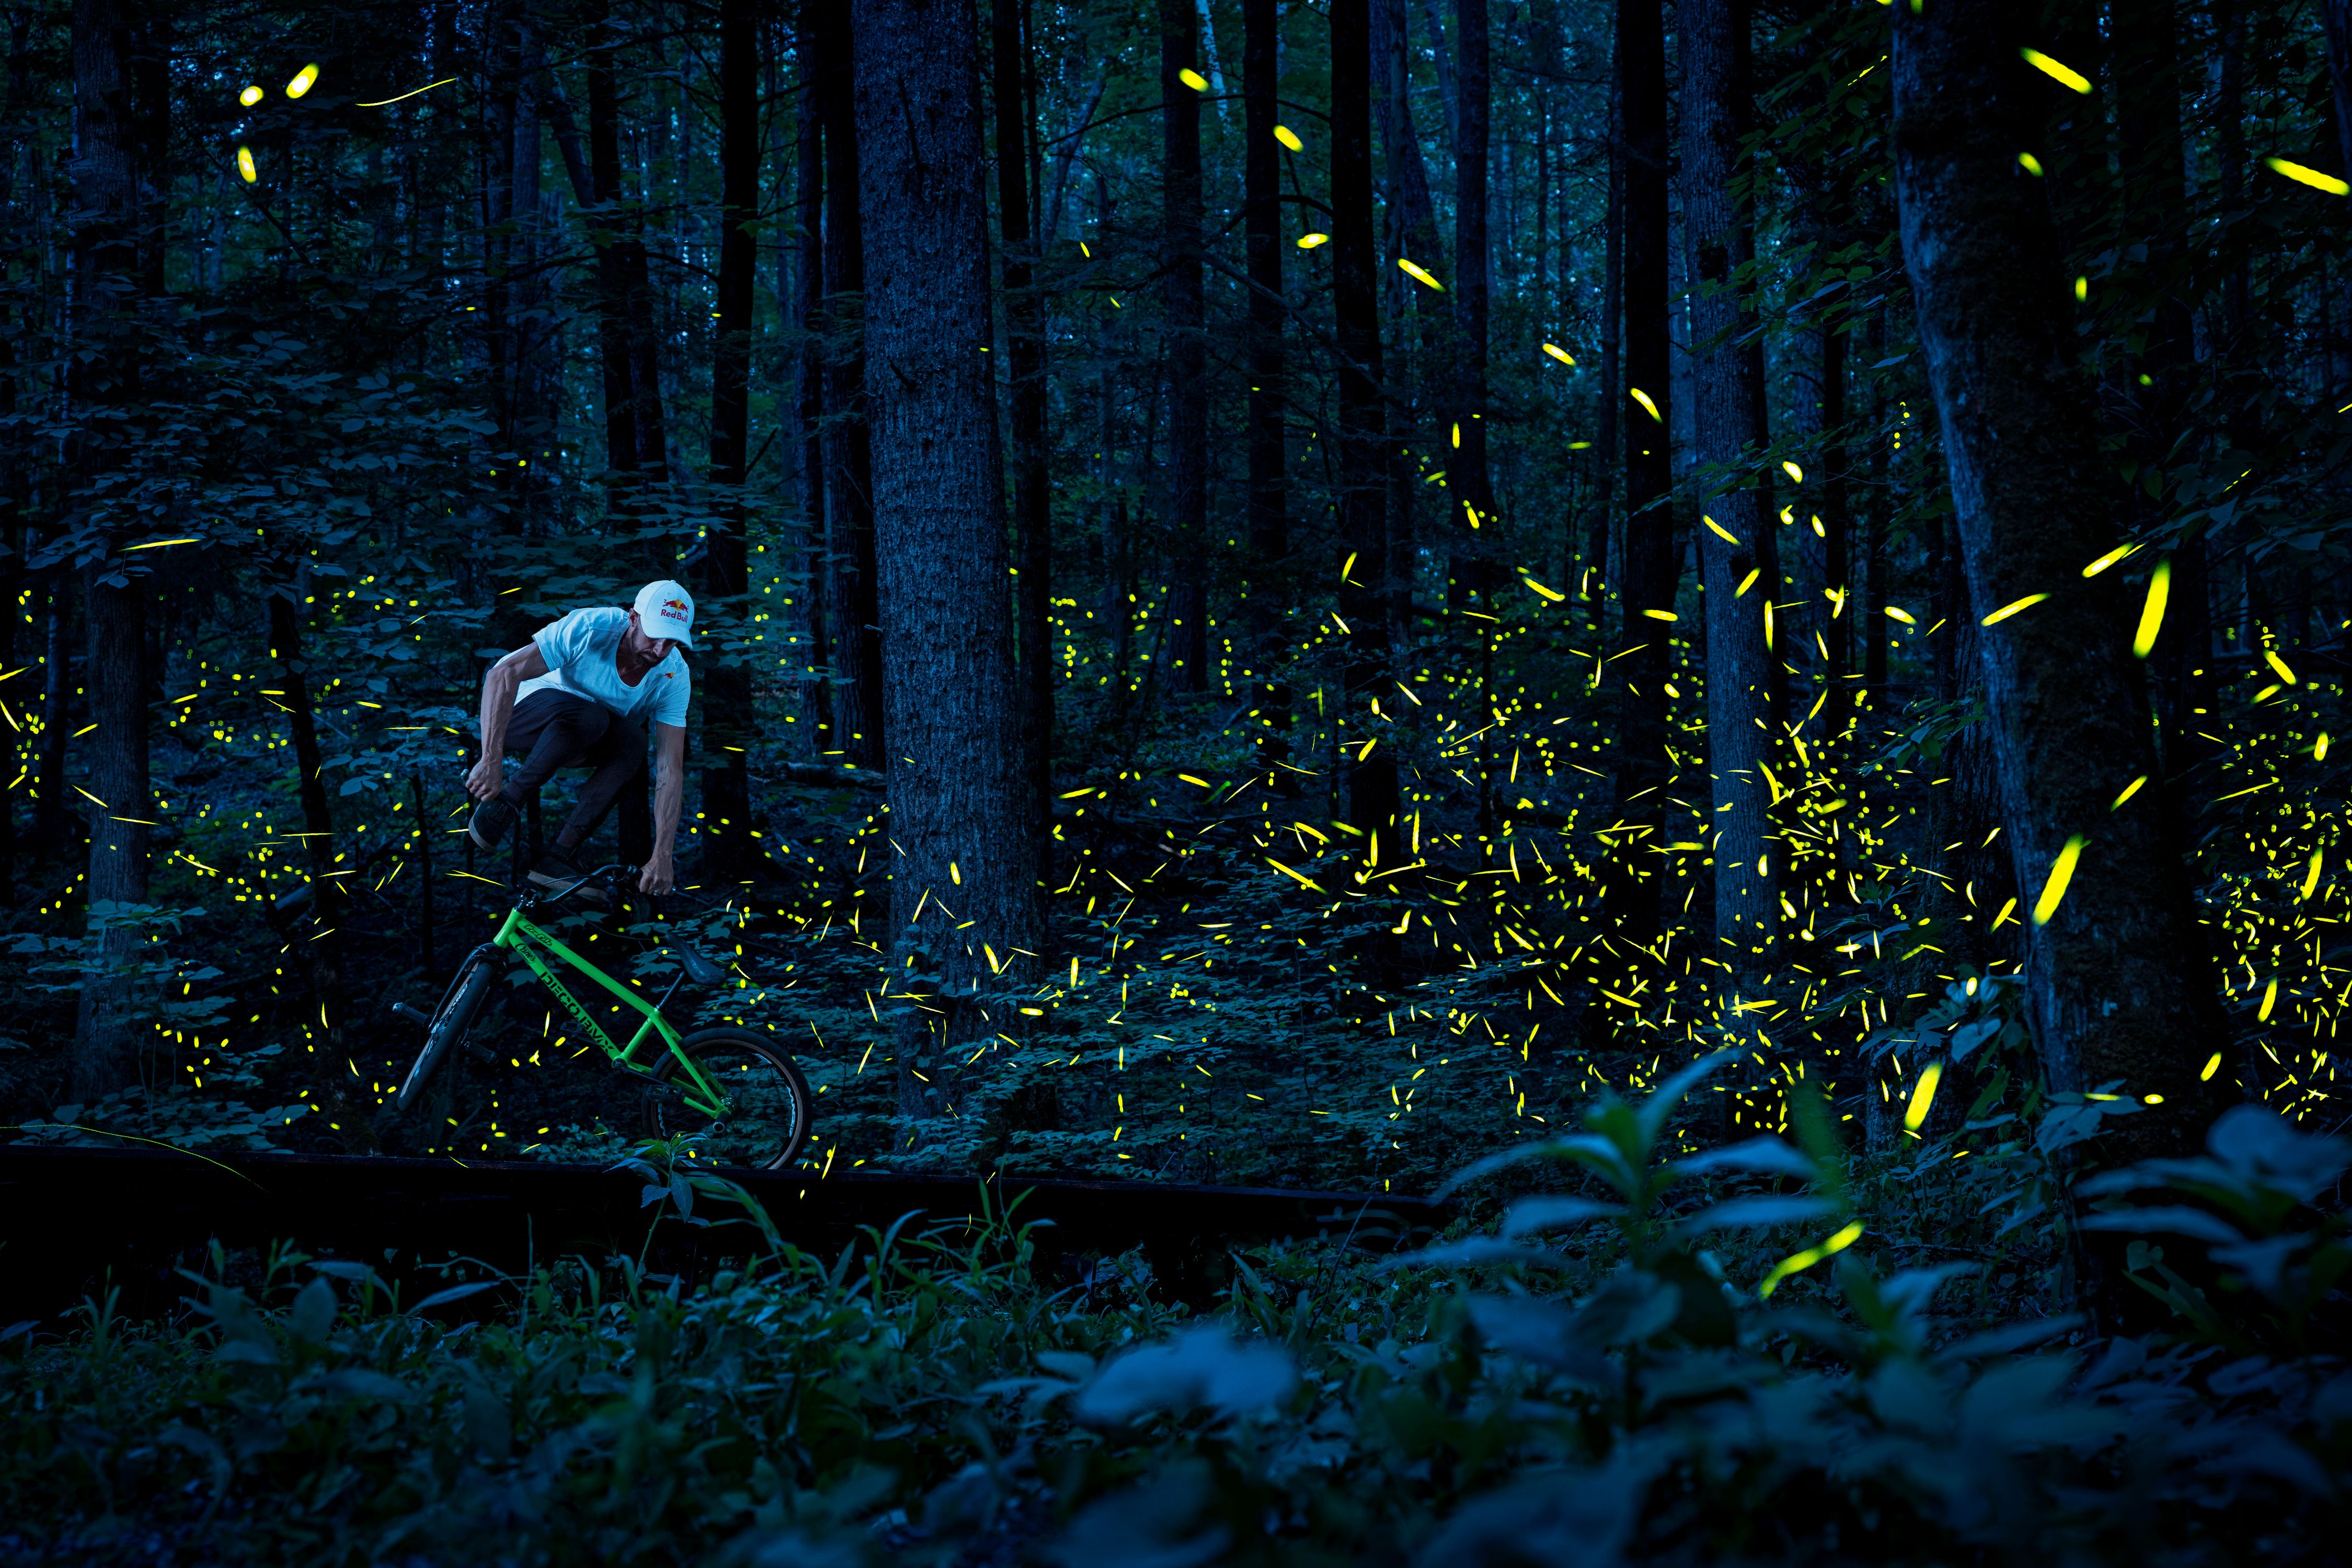 Terry Adams rides flatland BMX amongst the fireflies of Tennessee.